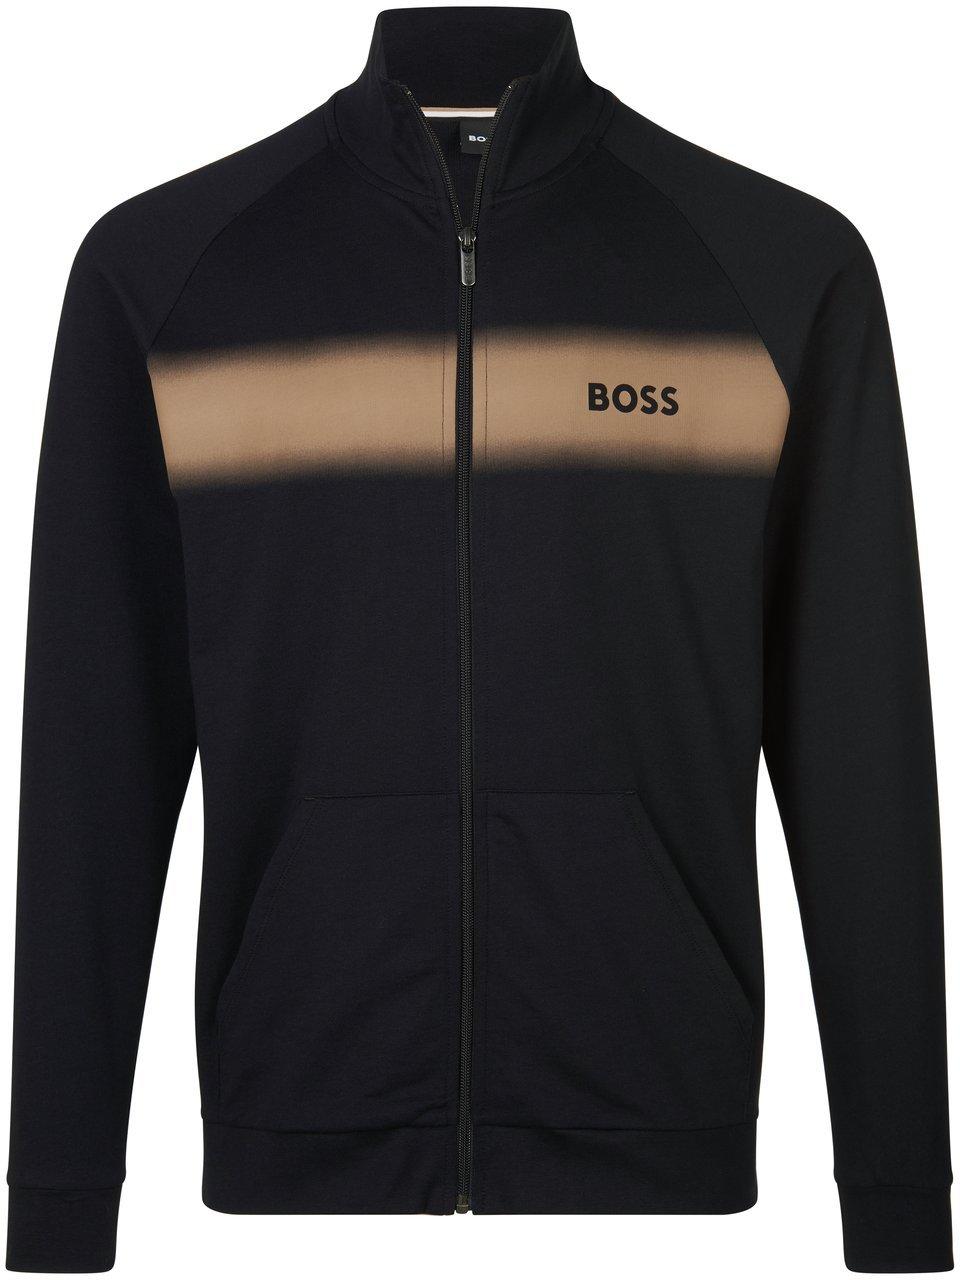 BOSS - La veste de jogging « Authentic Jacket Z »